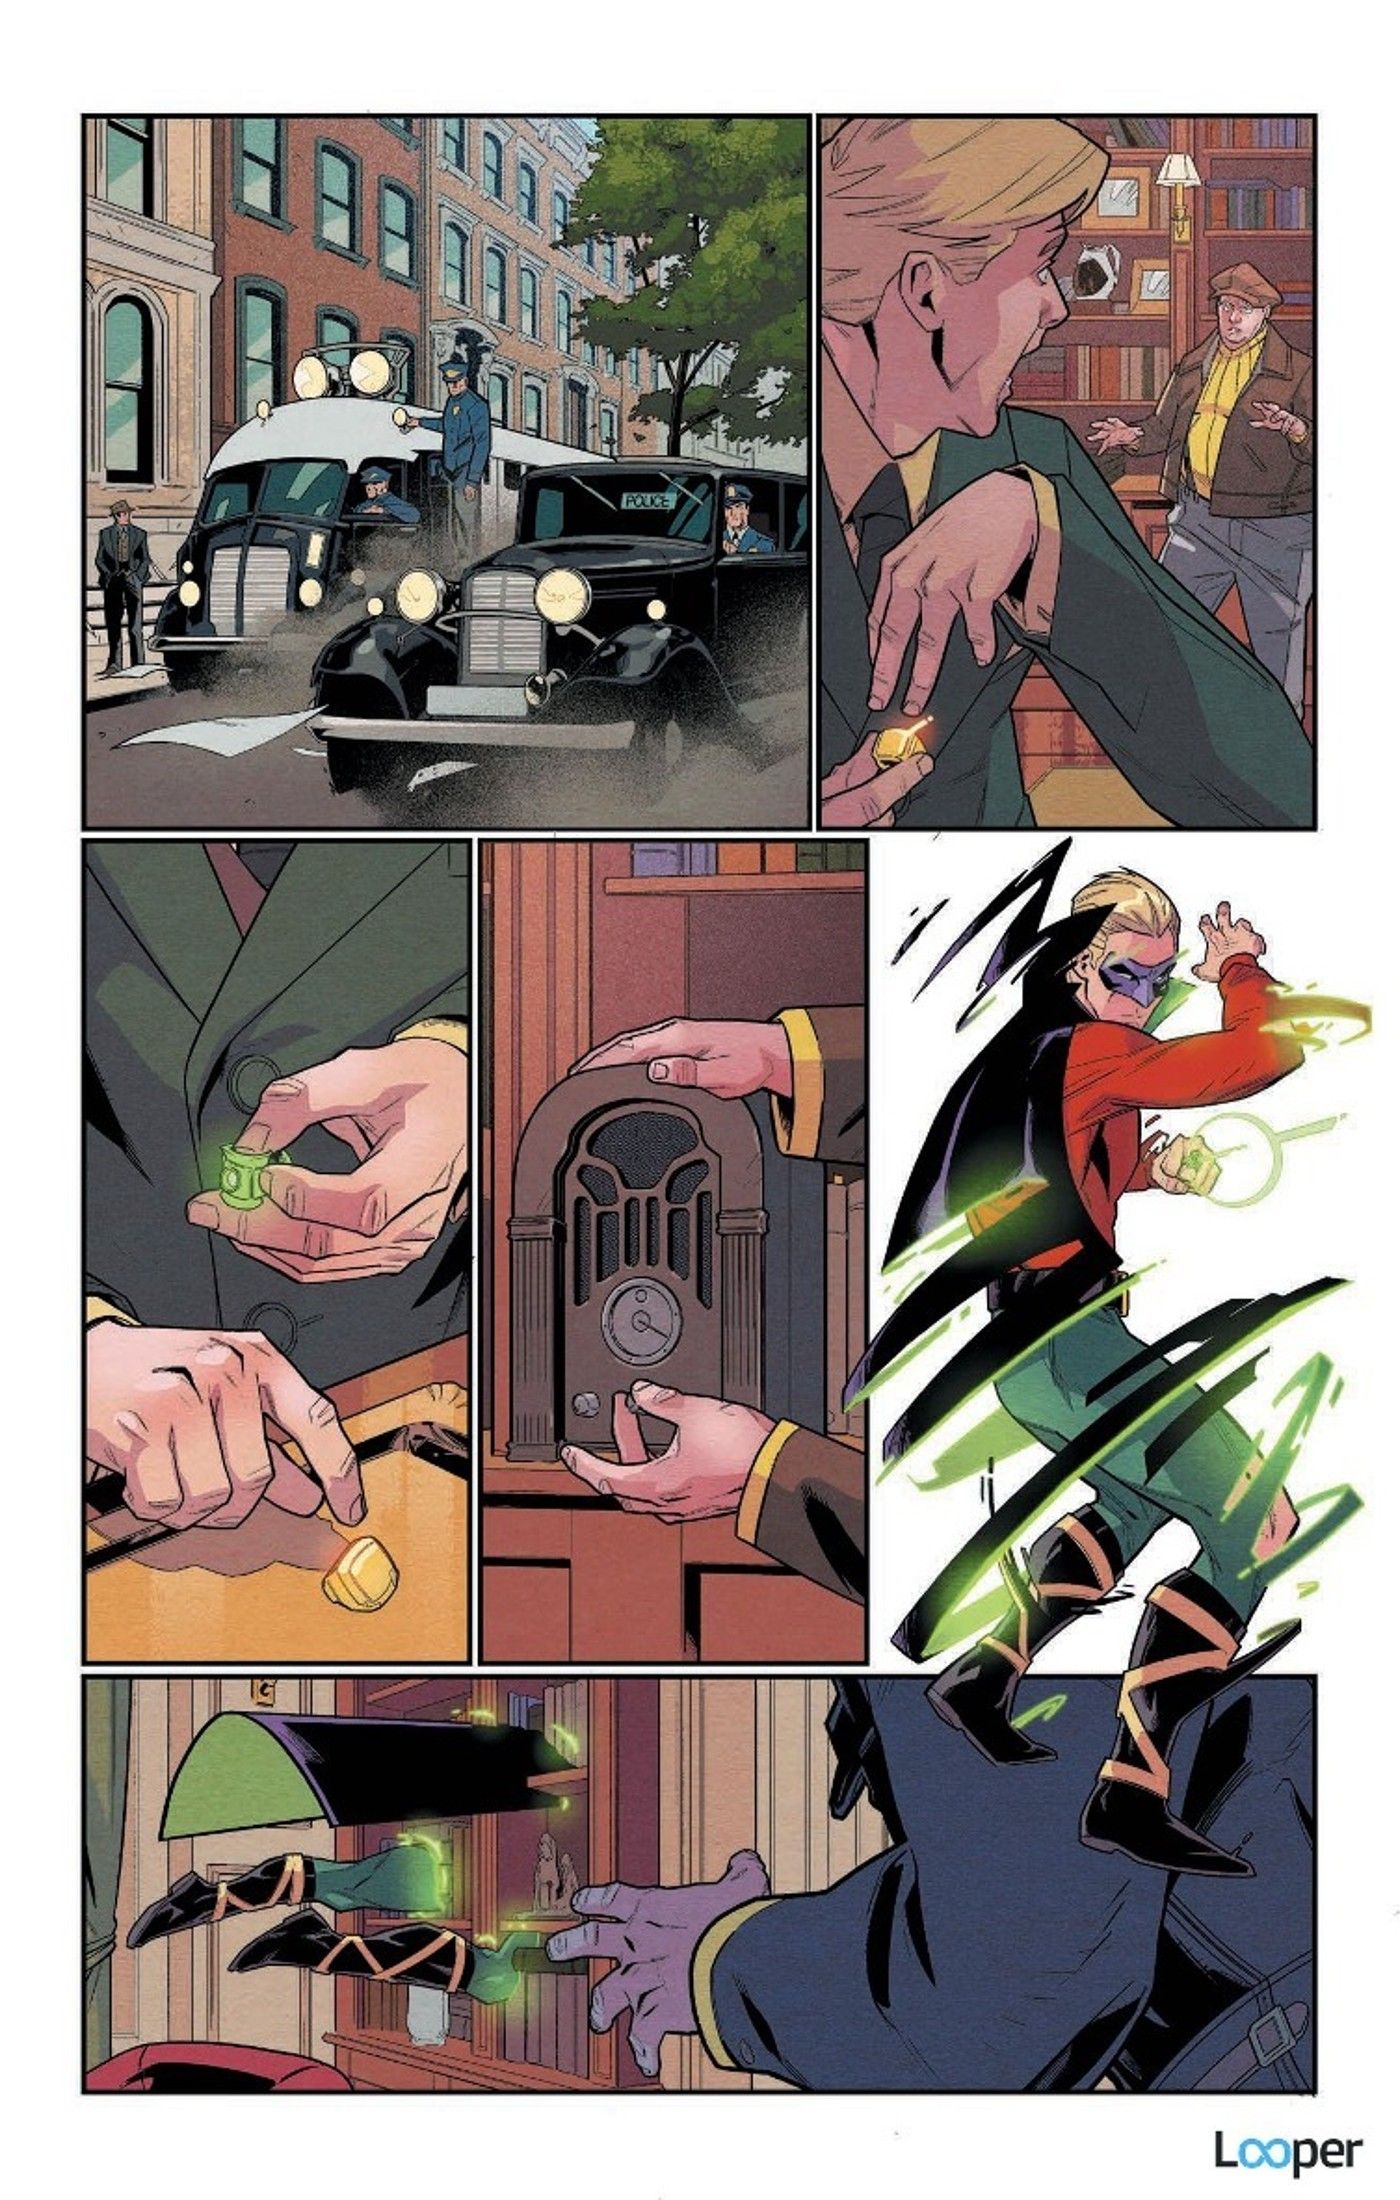 Alan Scott The Green Lantern #1 preview page